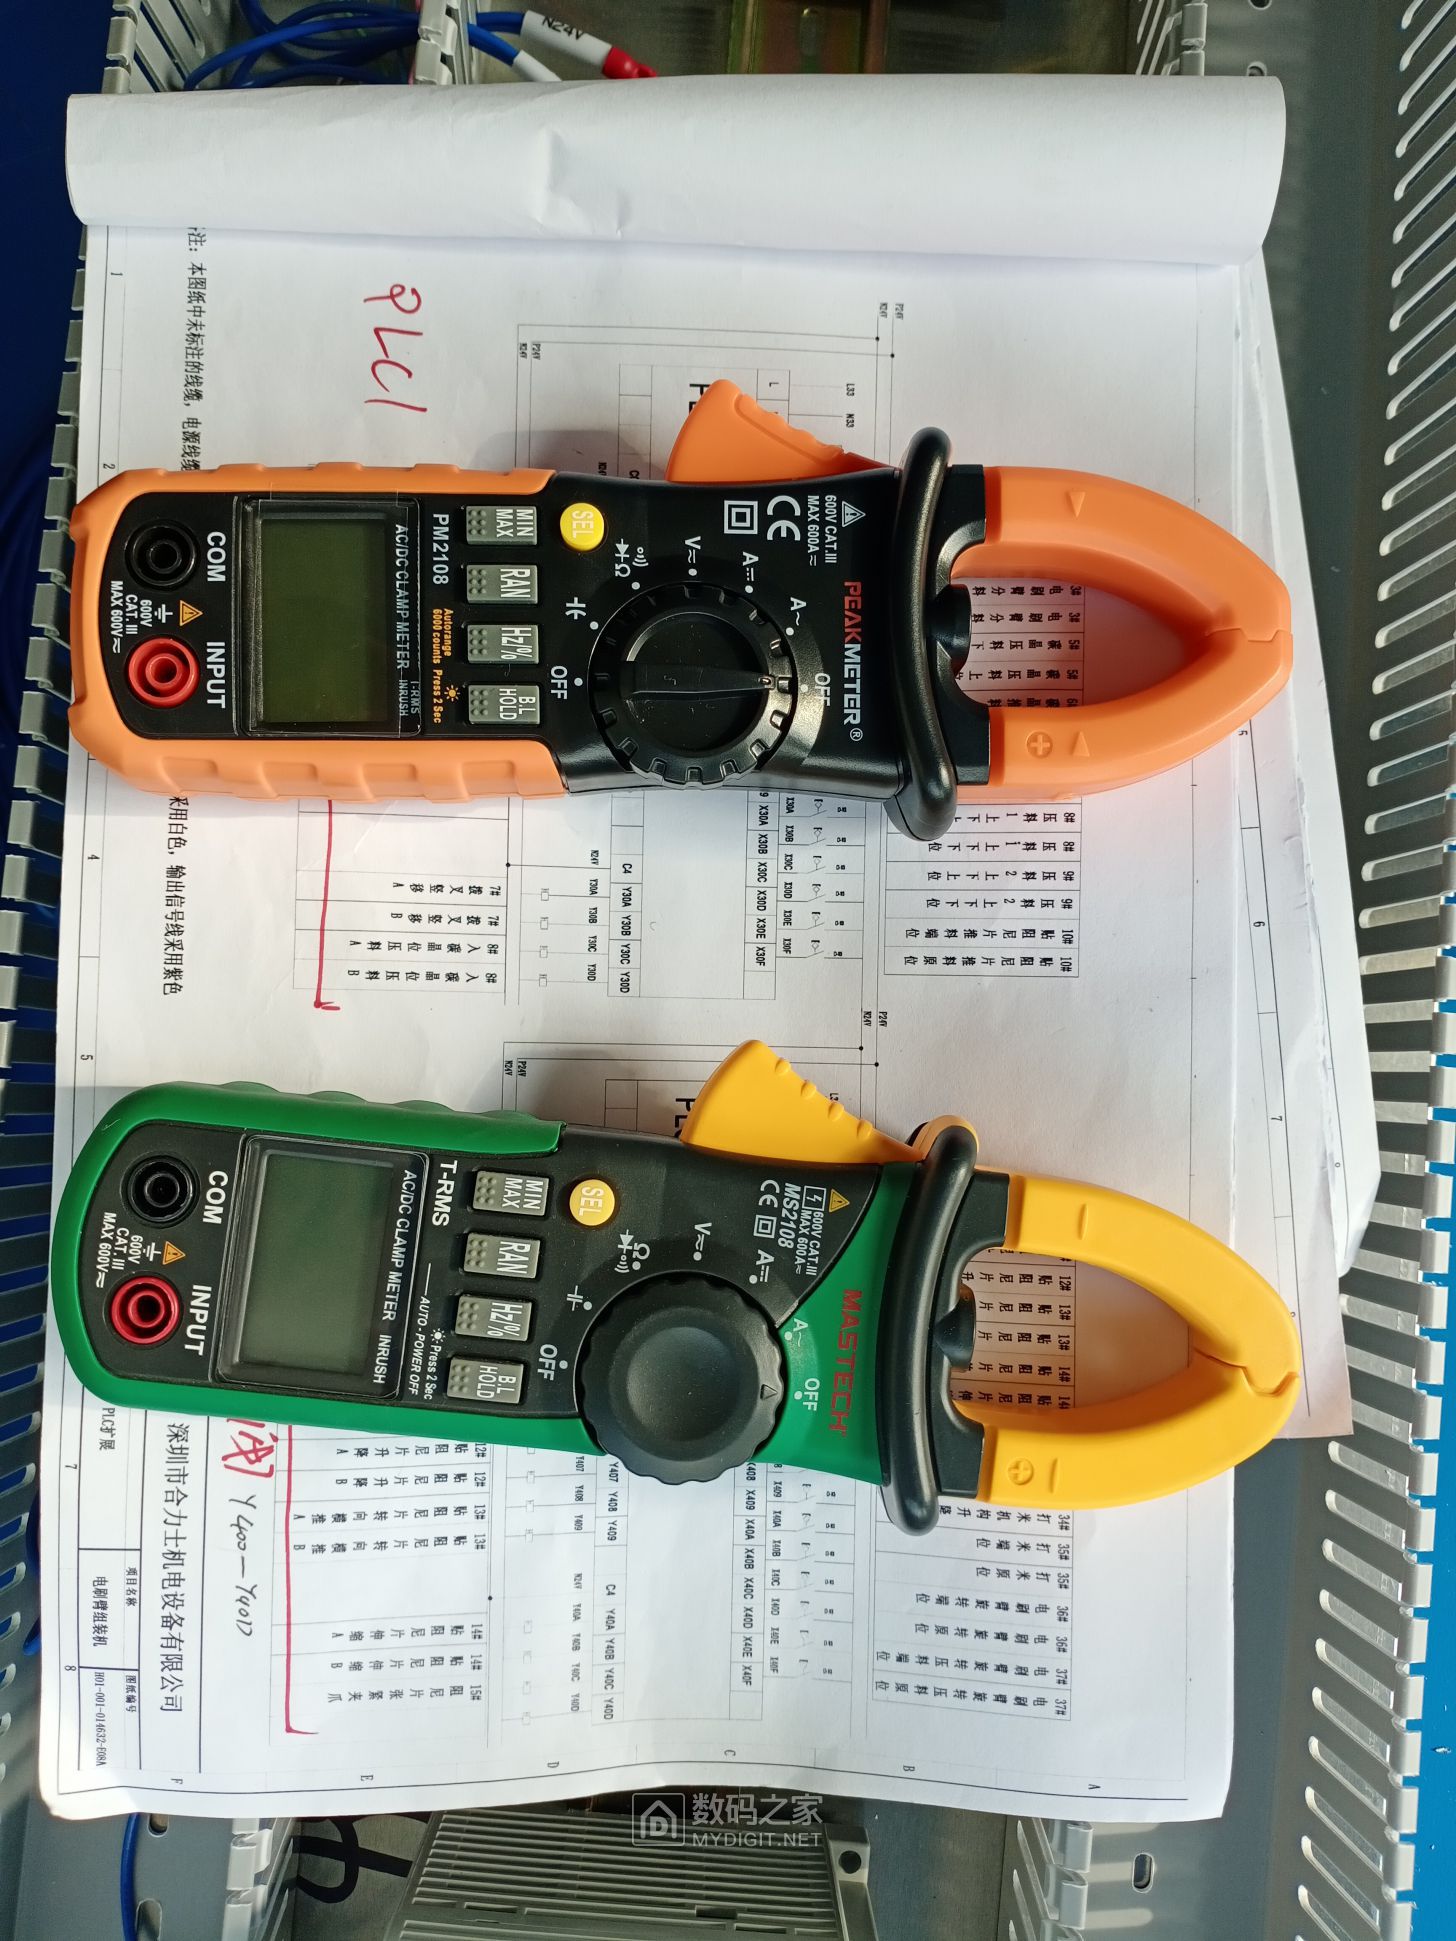 哪个是正品哪个是仿品 可以对比对比 测量电压 电阻的速度 仿品那是没法能比的 ... ...